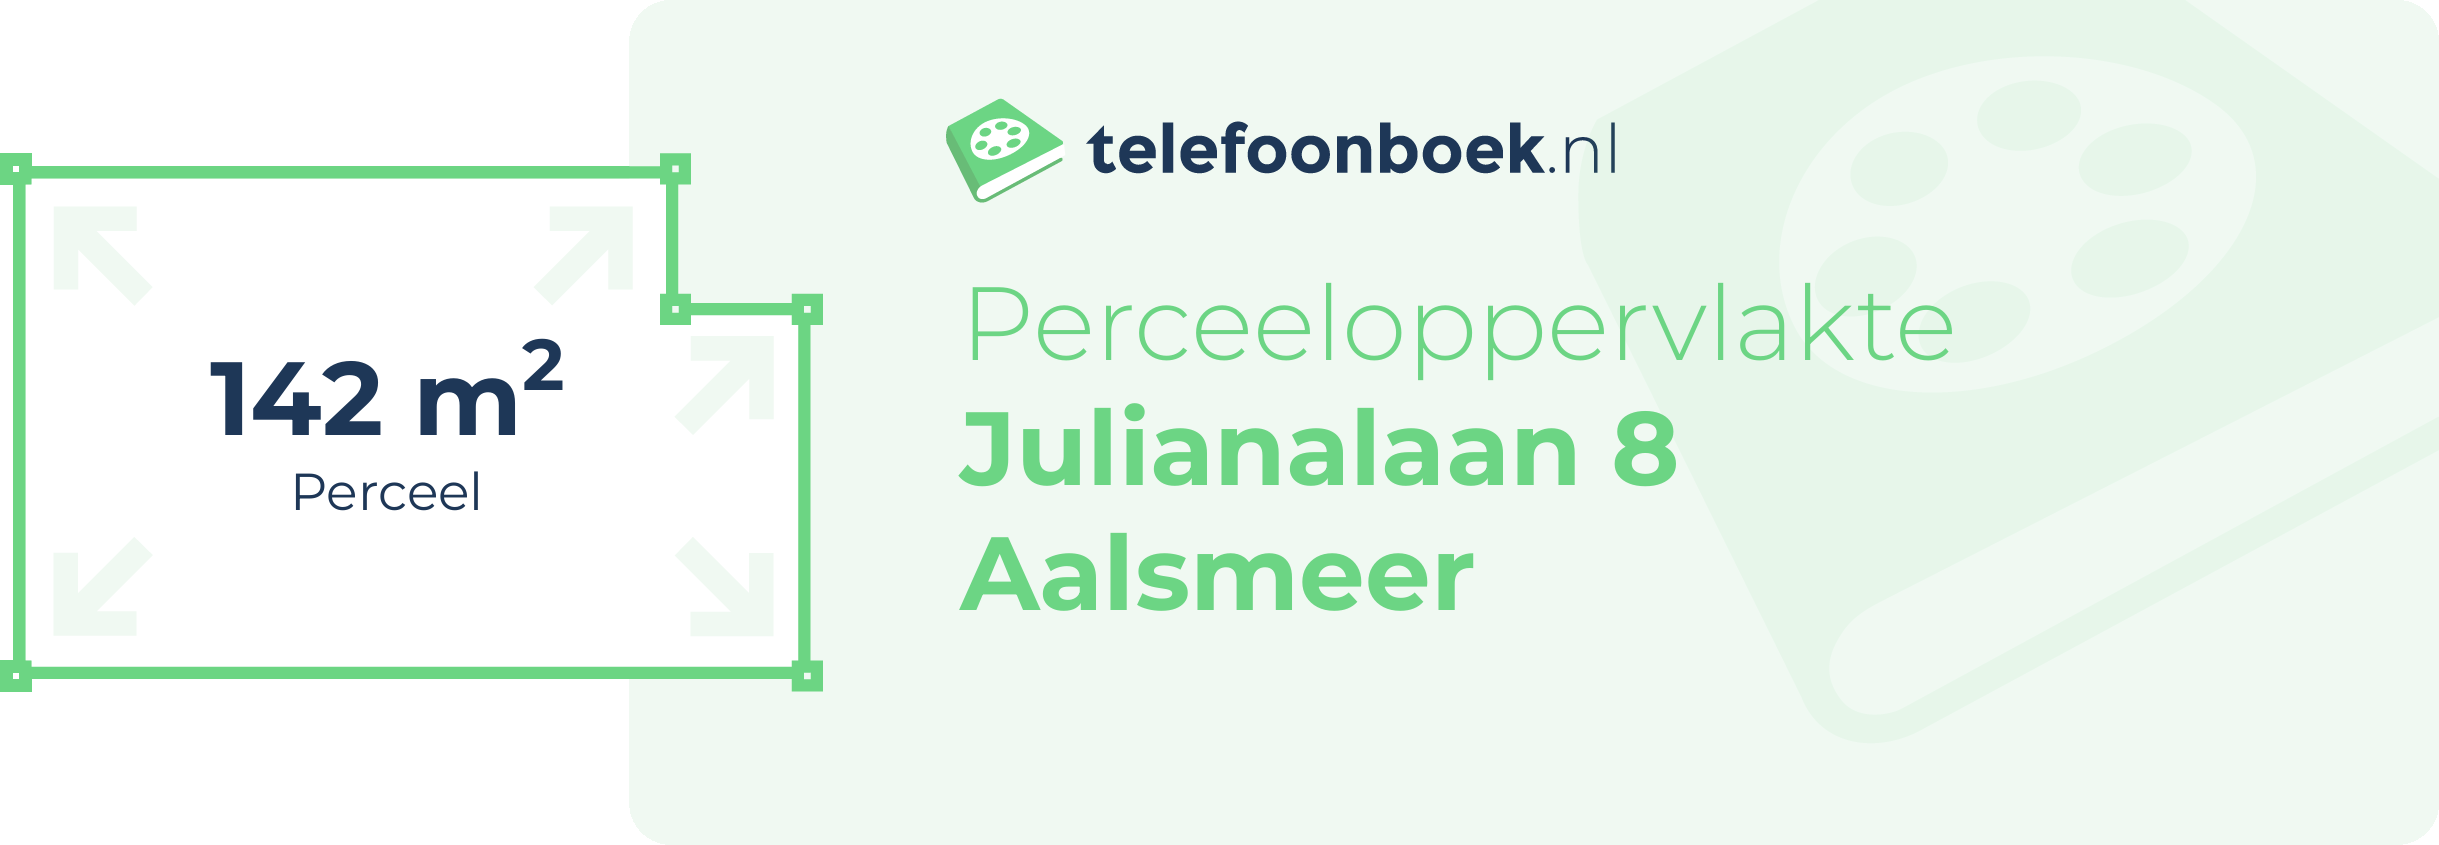 Perceeloppervlakte Julianalaan 8 Aalsmeer